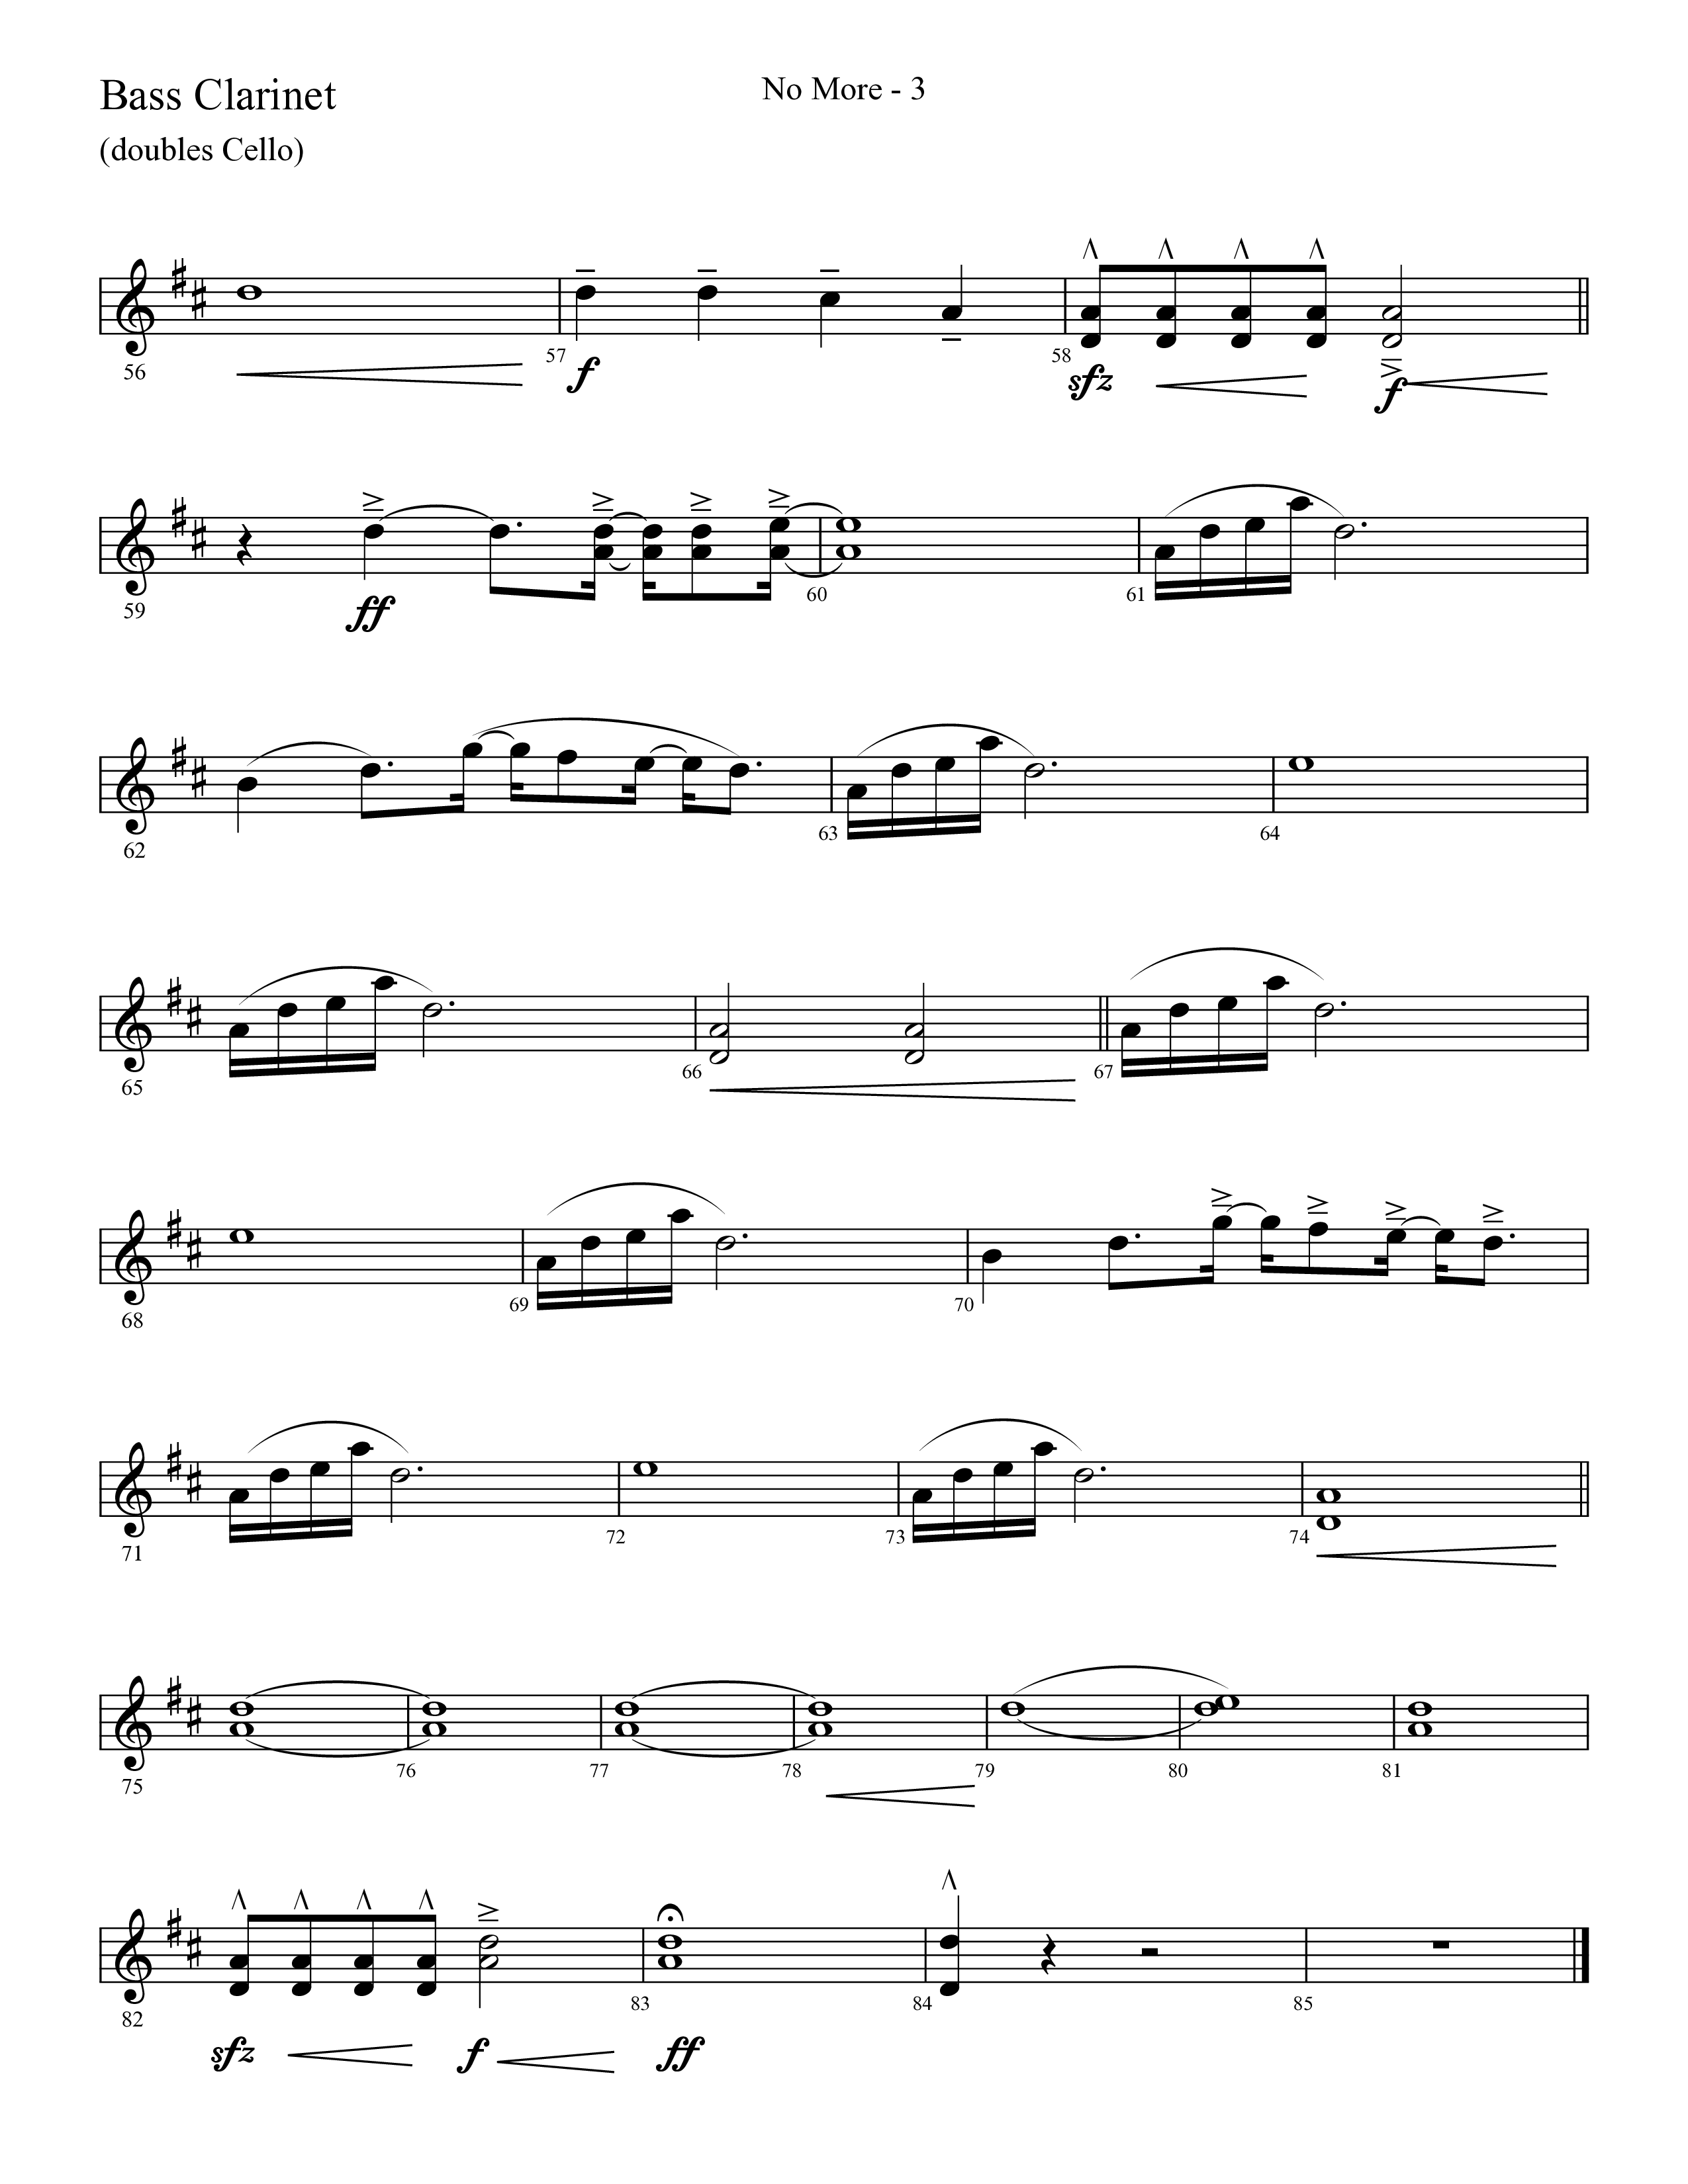 No More (Choral Anthem SATB) Bass Clarinet (Lifeway Choral / Arr. Cliff Duren)